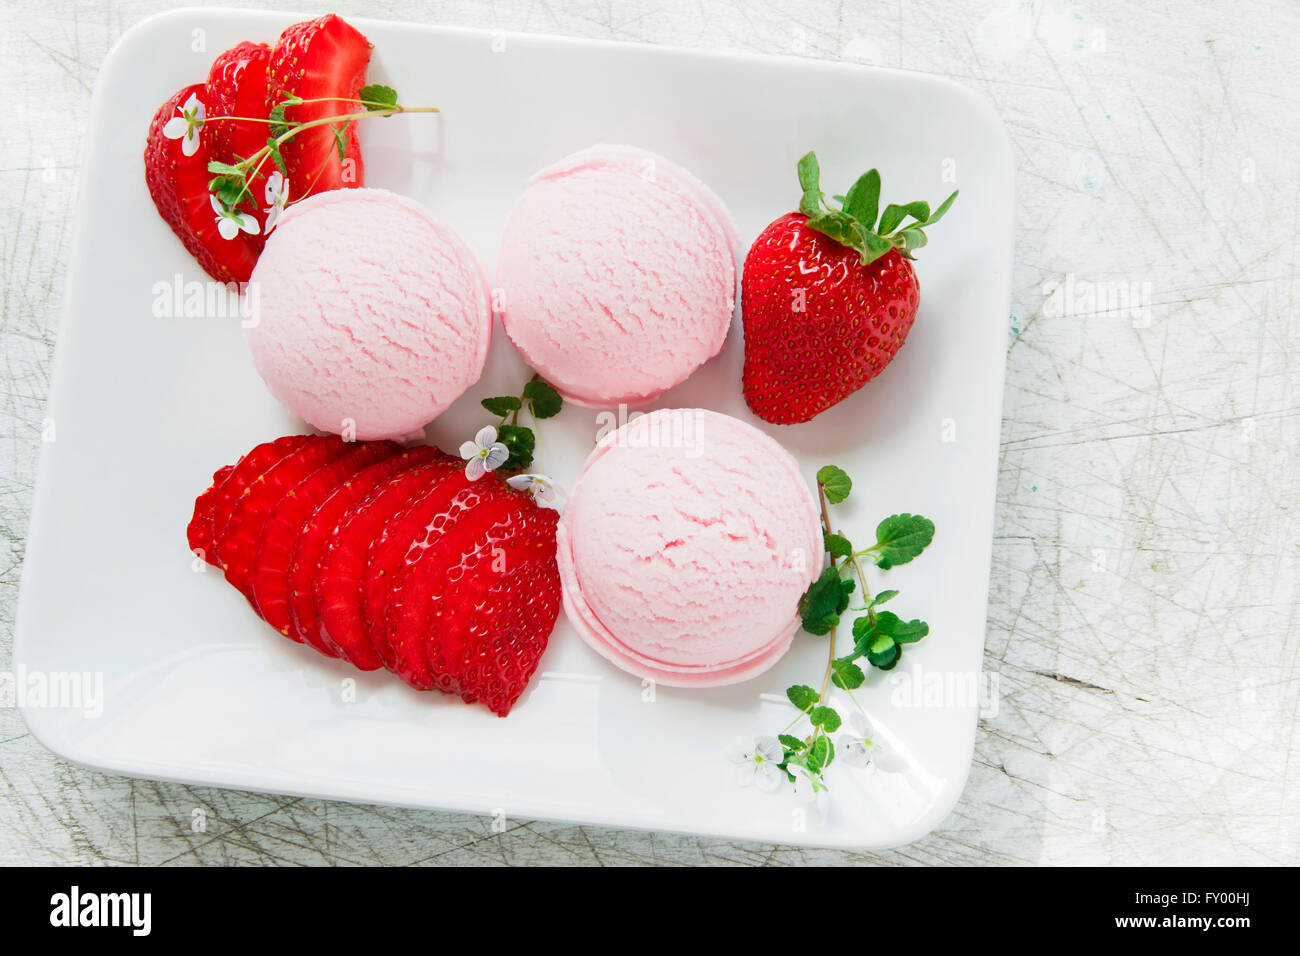 Boule de glace à la fraise avec des fraises fraîches Banque D'Images